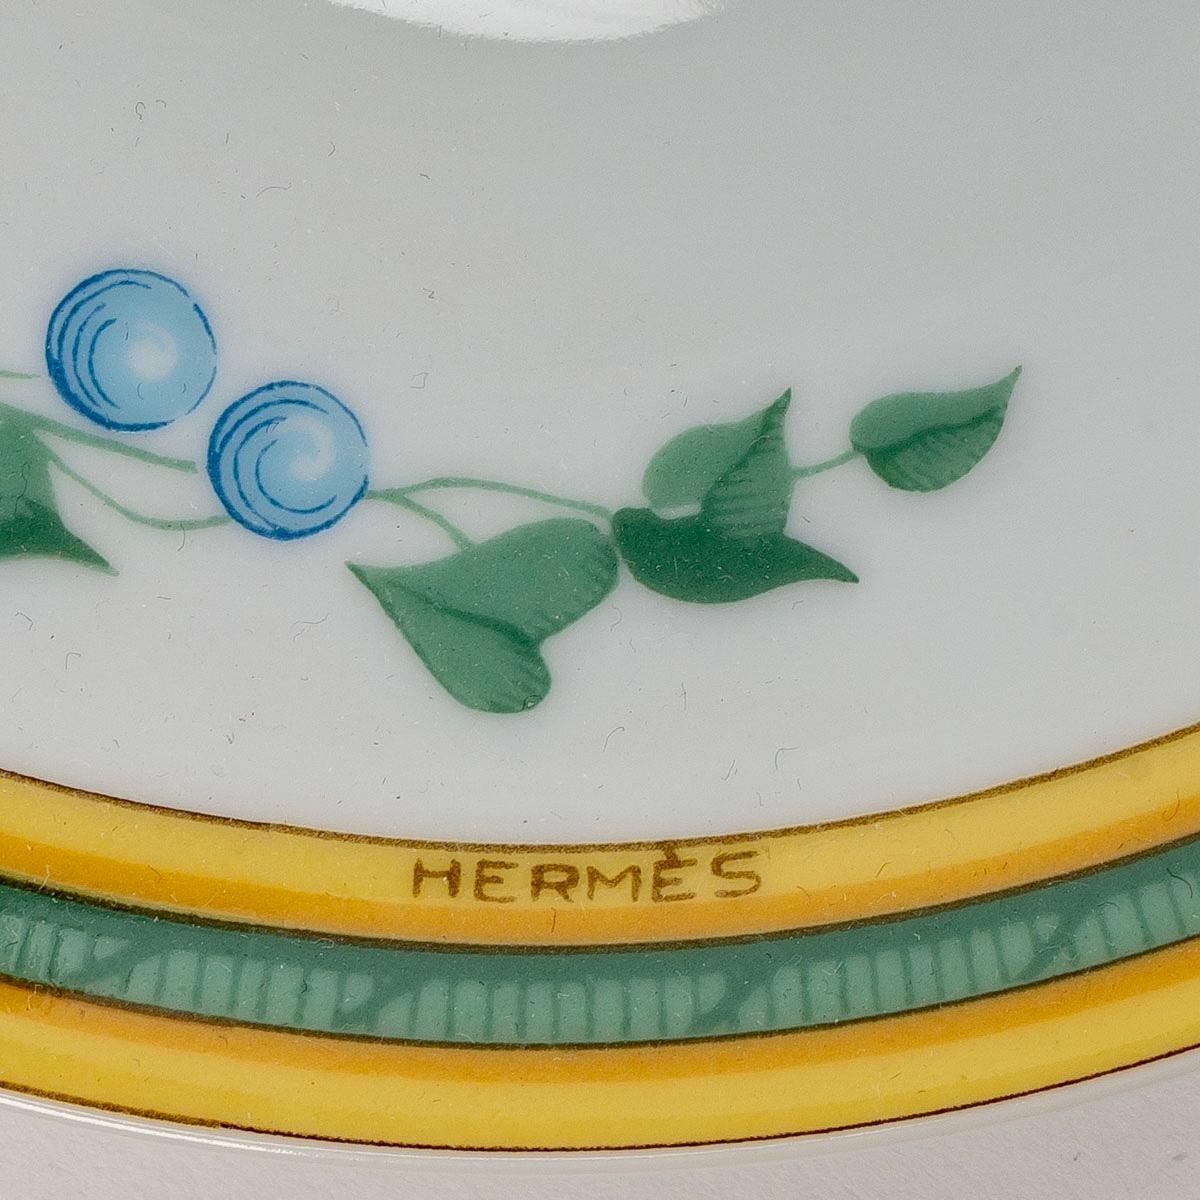 French Hermes Maison - Coffee Tea Set Toucans Limoges Porcelain 18 Pieces